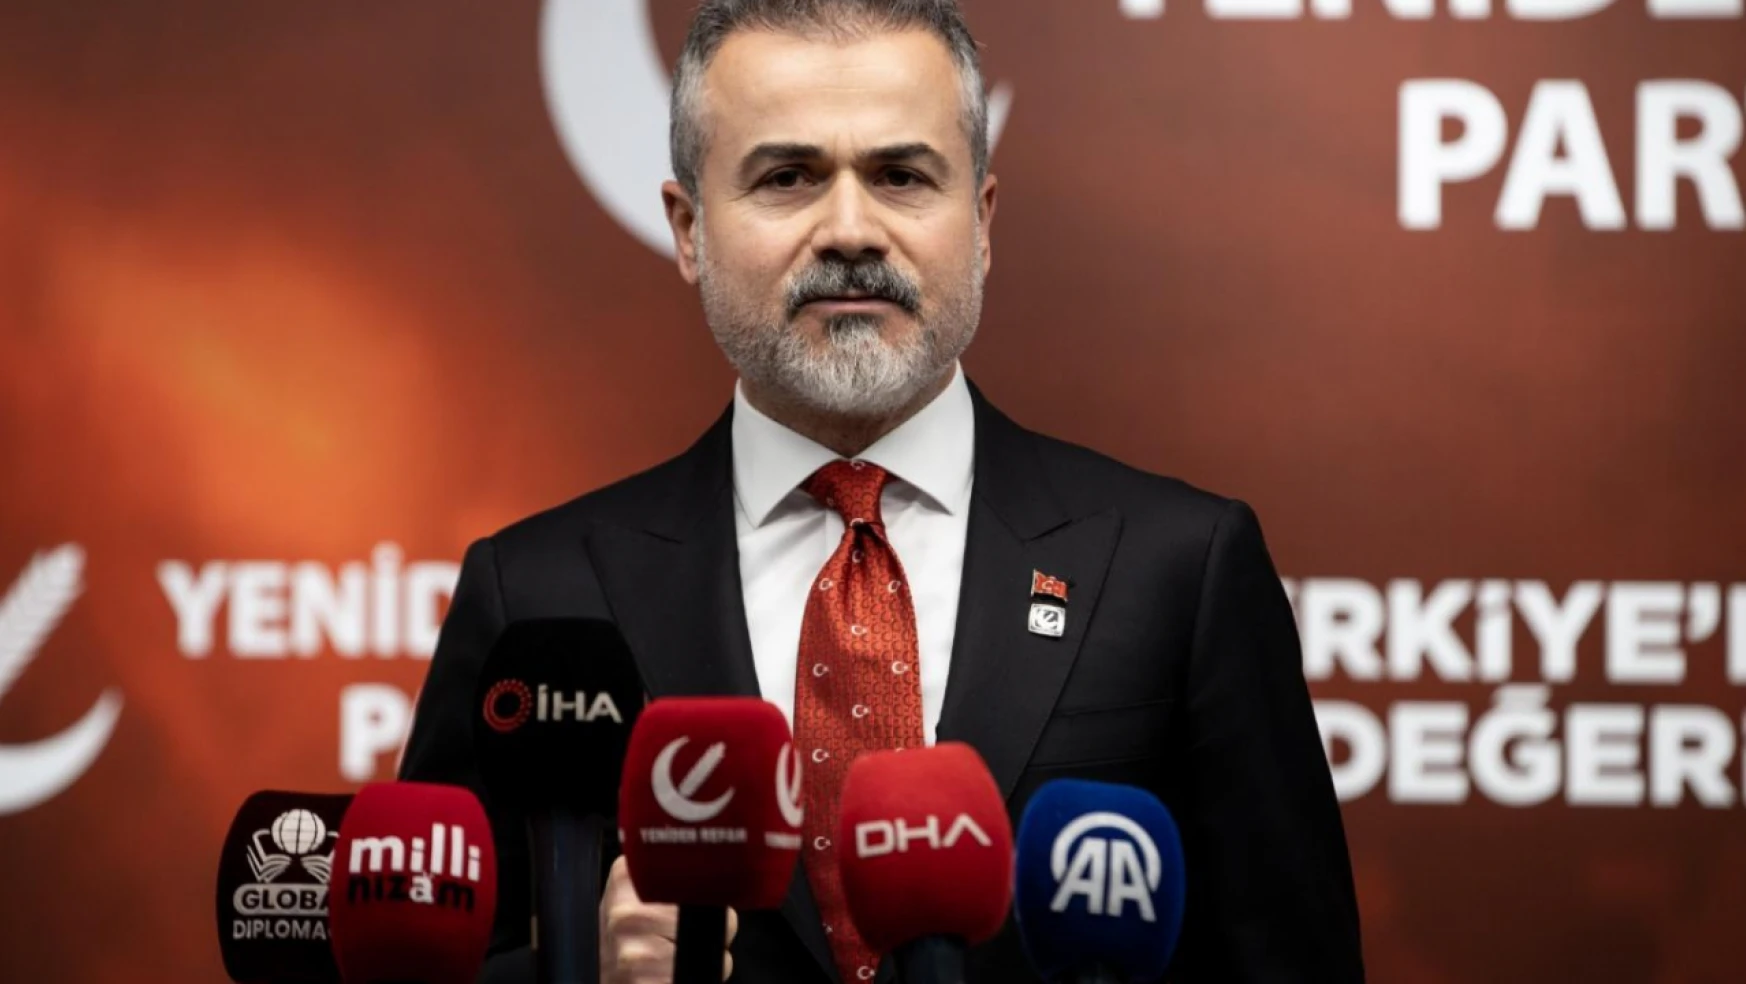 Yeniden Refah Partisi Genel Başkan Yardımcısı Kılıç'tan ittifak açıklaması: